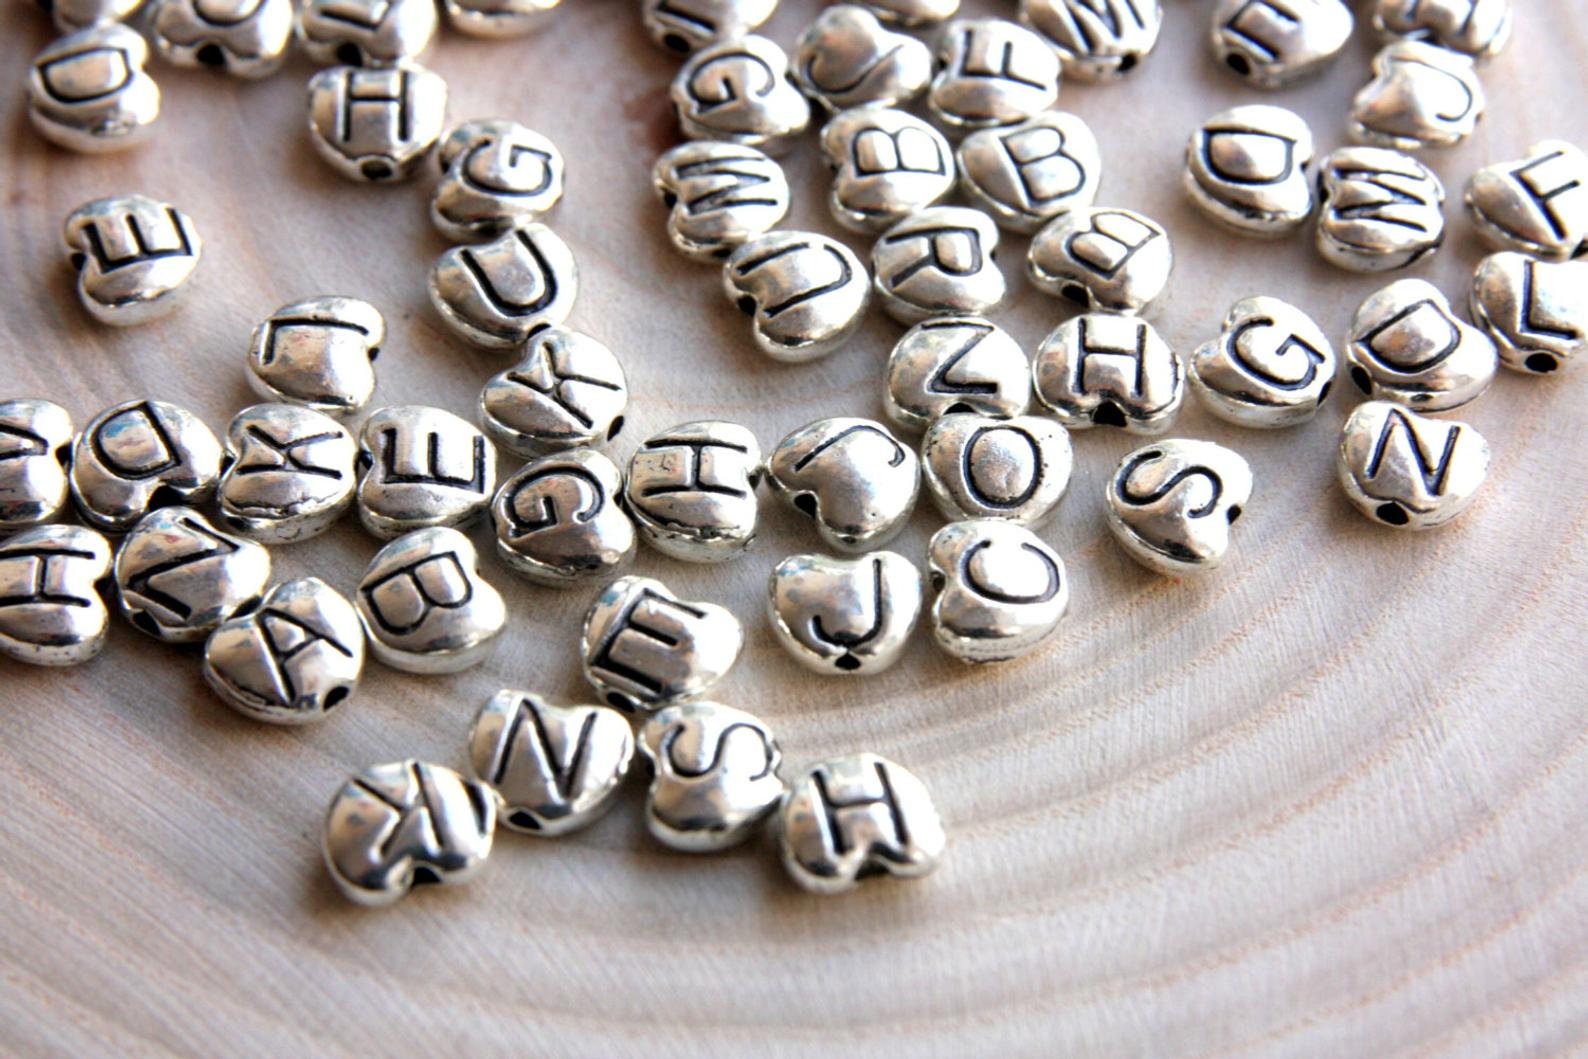 Black Heart Alphabet Letter Beads, Black and White Heart Letters Beads,  Mixed Acrylic Alphabet Beads, Heart Alphabet Name Beads 7mm 231 